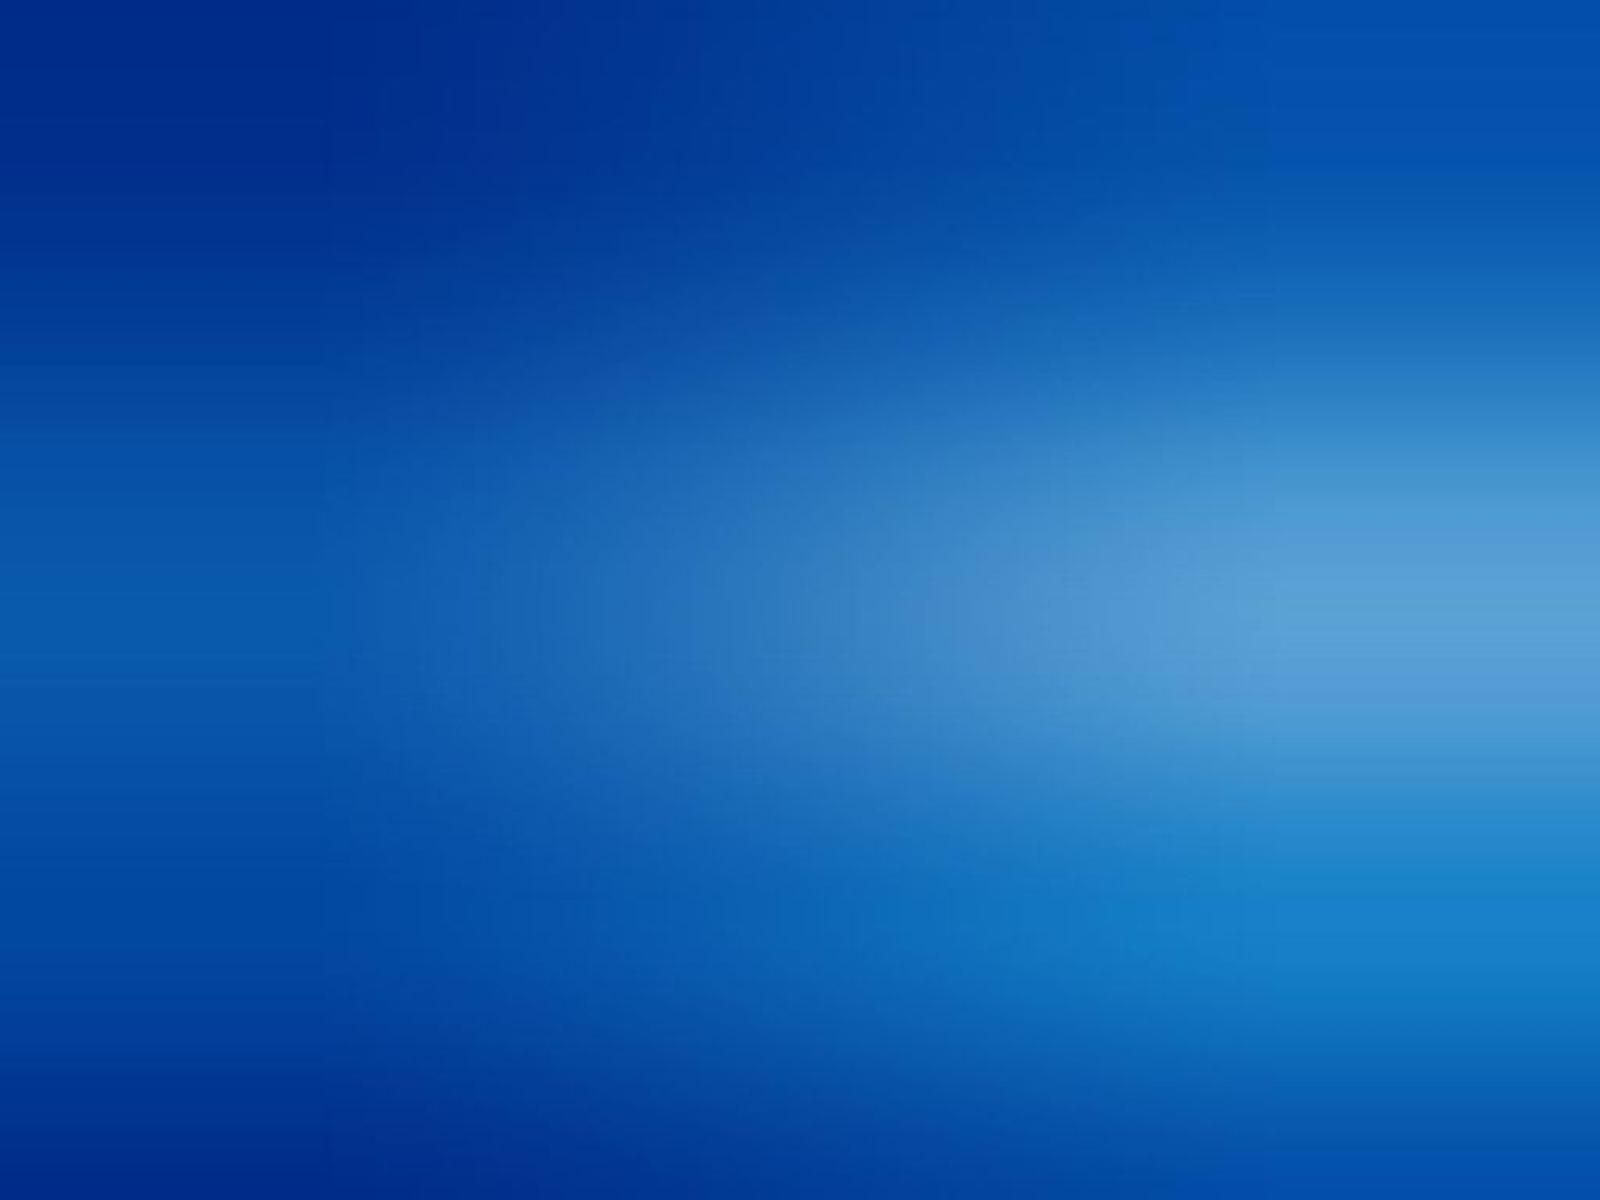 10 Último fondo azul liso FULL HD 1920 × 1080 para PC de escritorio